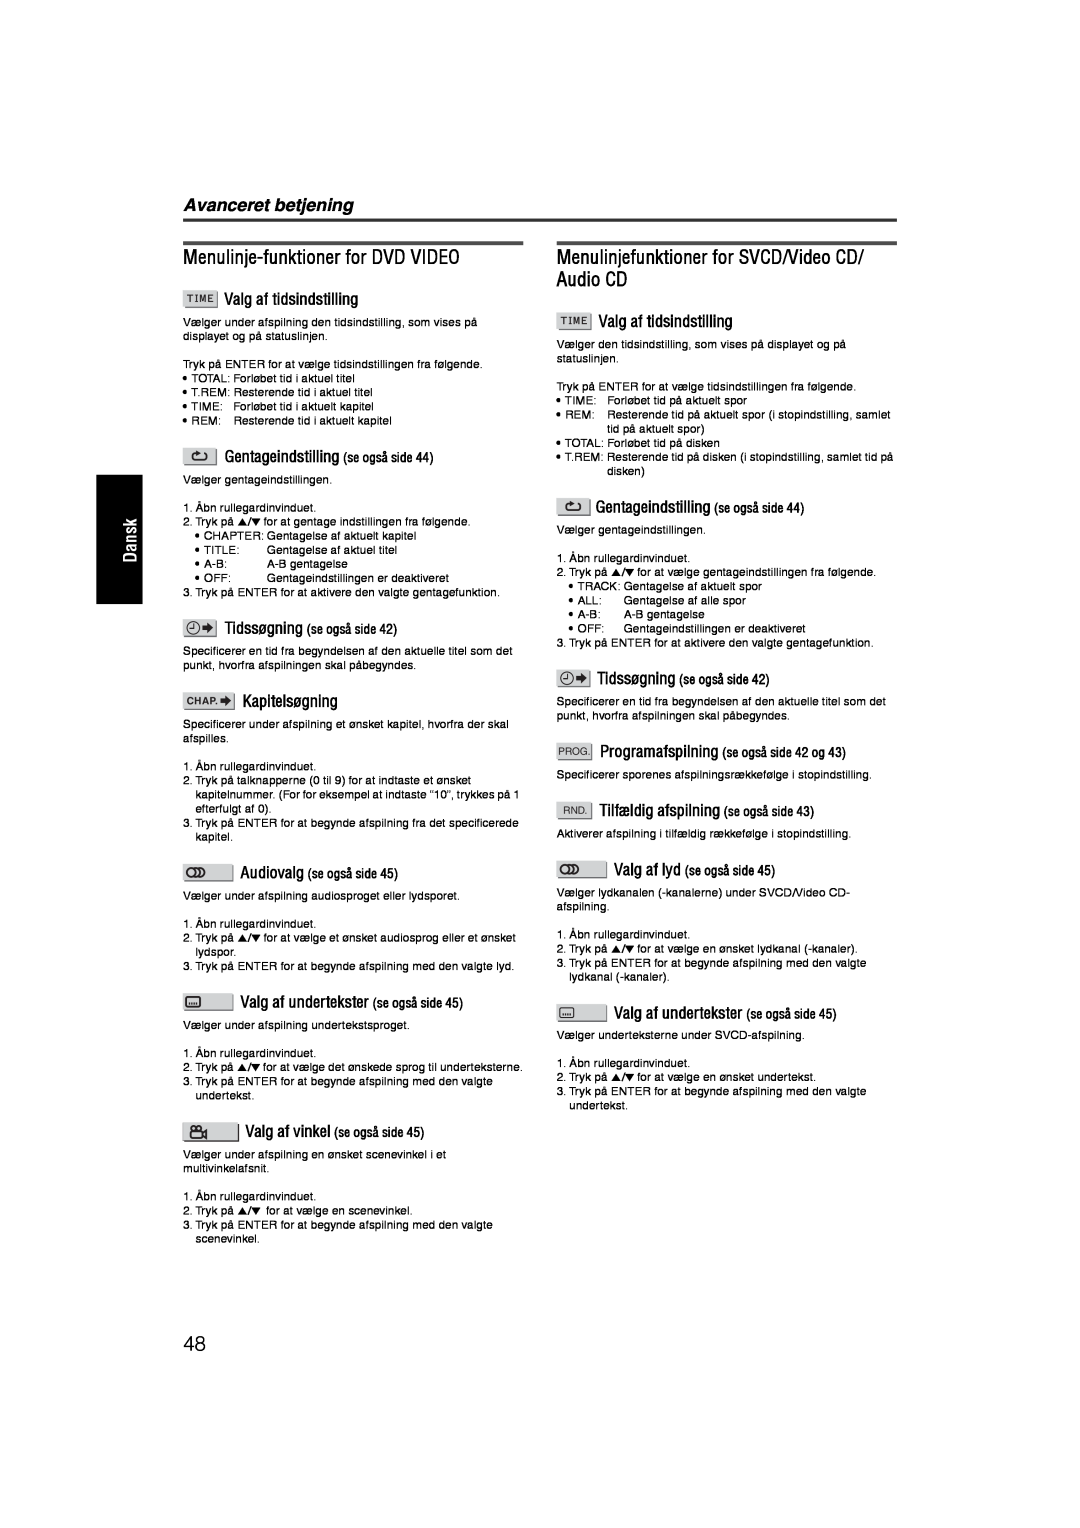 JVC RX-ES1SL manual Menulinje-funktionerfor DVD VIDEO, Menulinjefunktioner for SVCD/Video CD/ Audio CD, Avanceret betjening 